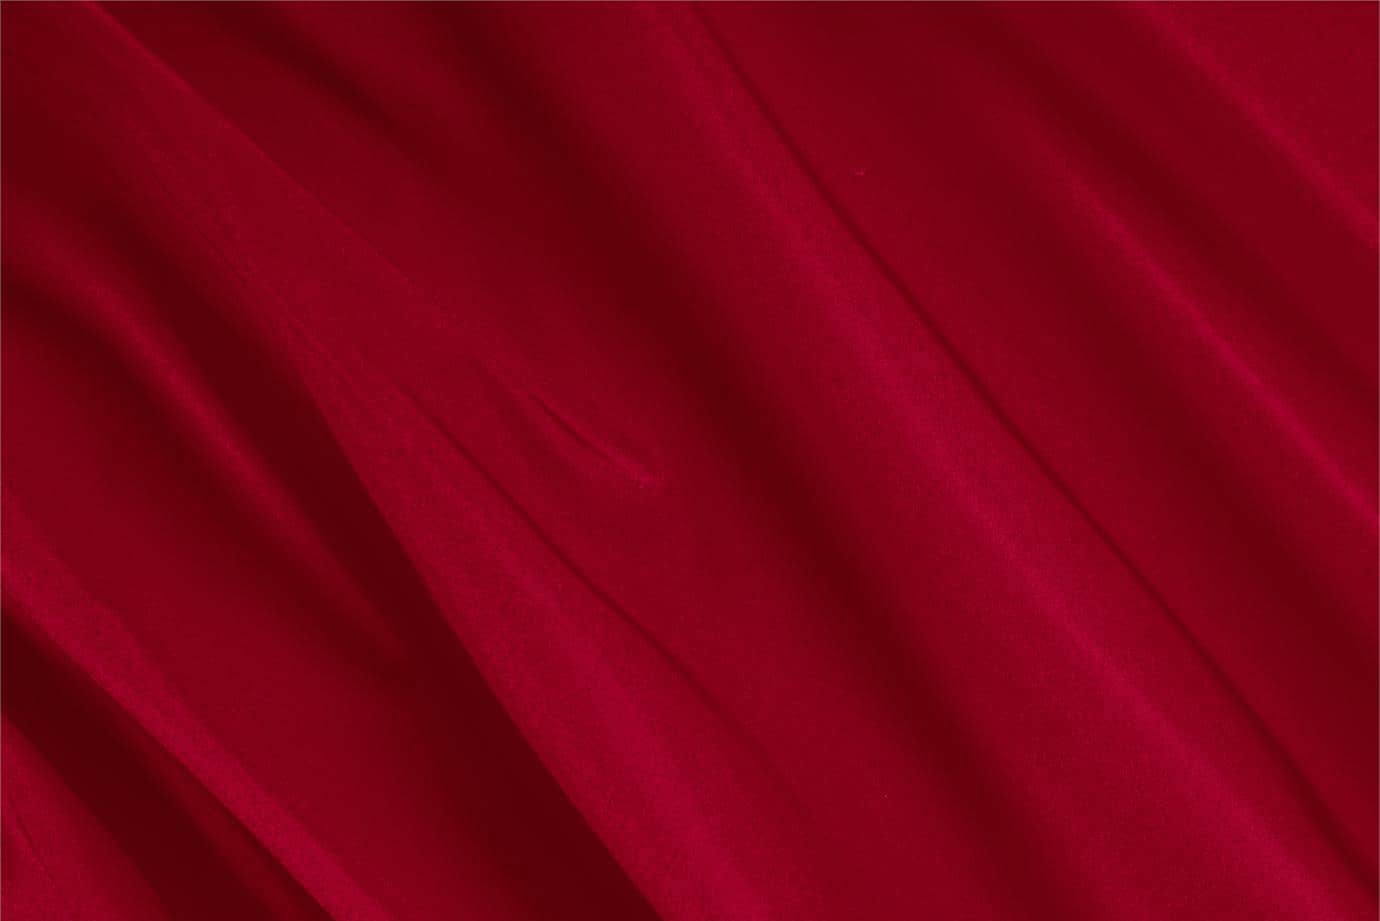 Tessuto Radzemire Rosso Rubino in Seta per abbigliamento